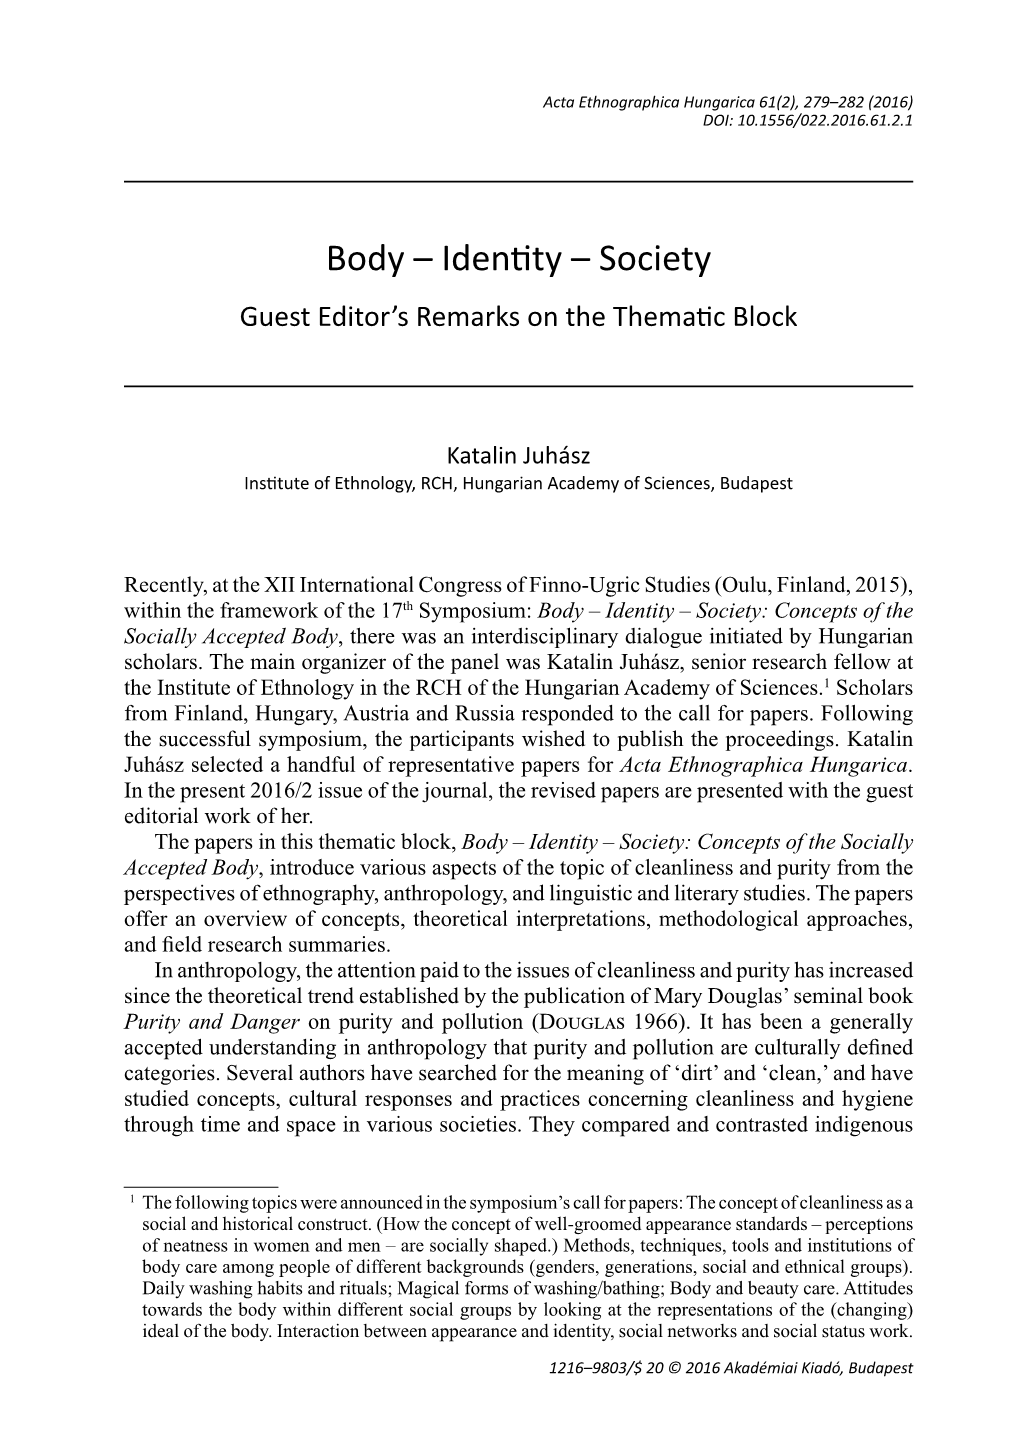 Body – Identy – Society